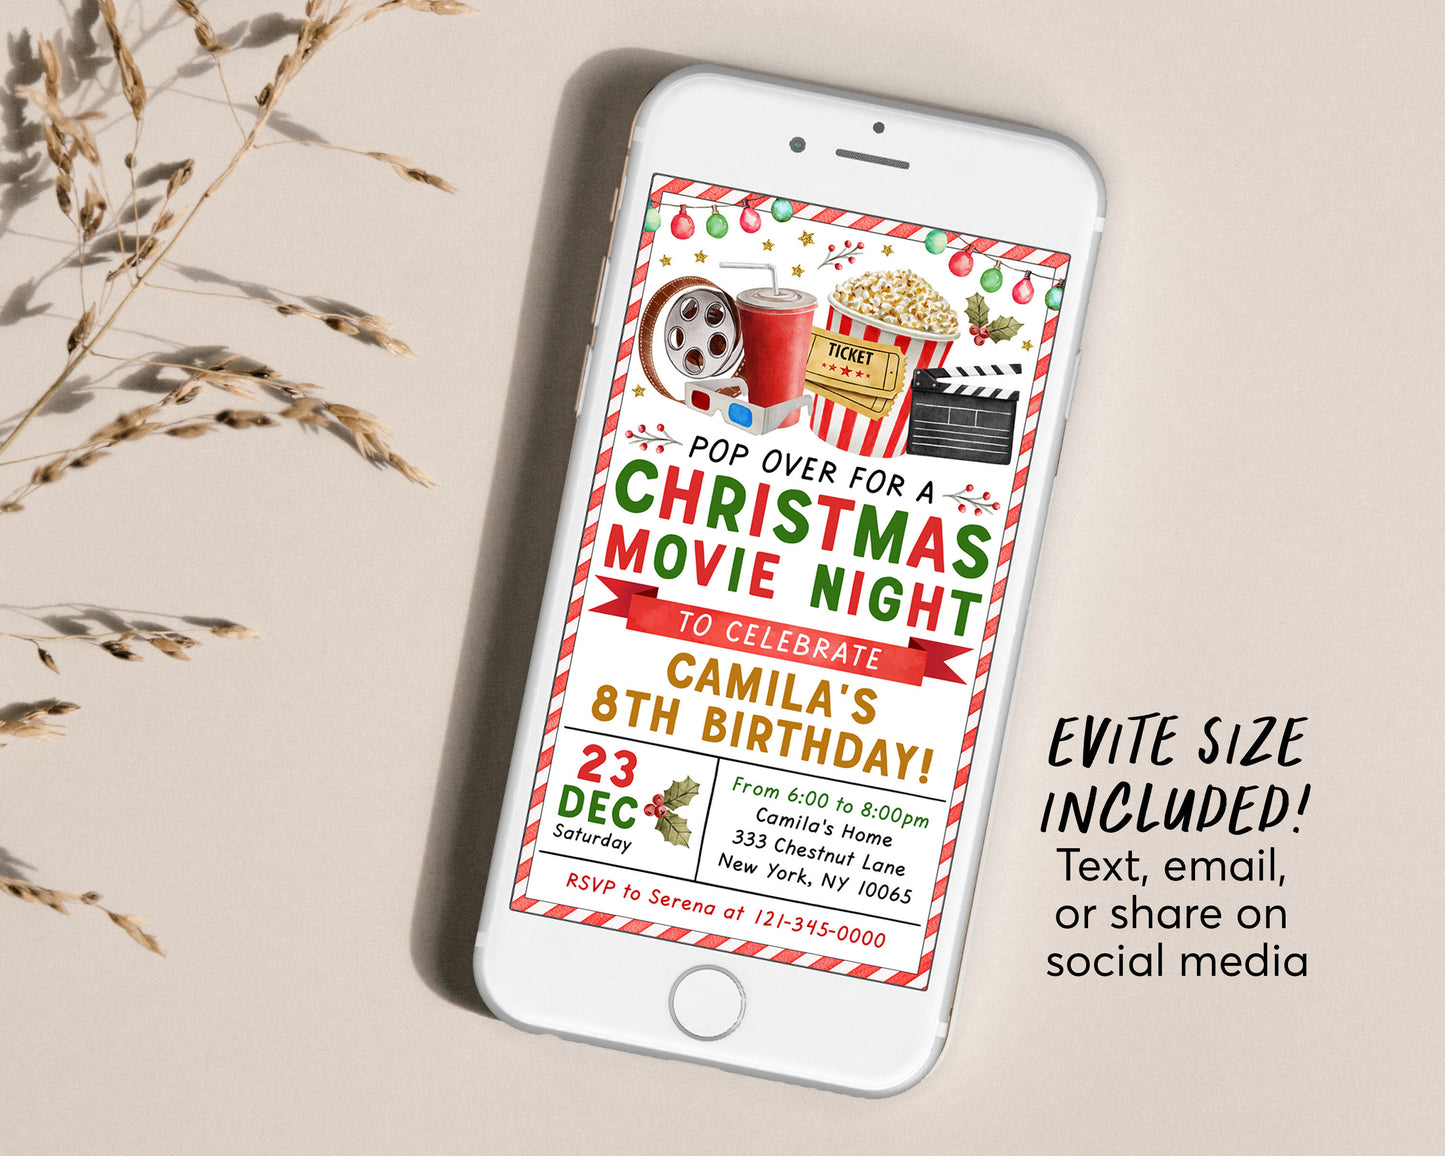 Christmas Birthday Movie Night Invitation Editable Template, Holiday Movie Party Invite Printable, Pajama Party Winter Outdoor Popcorn Movie